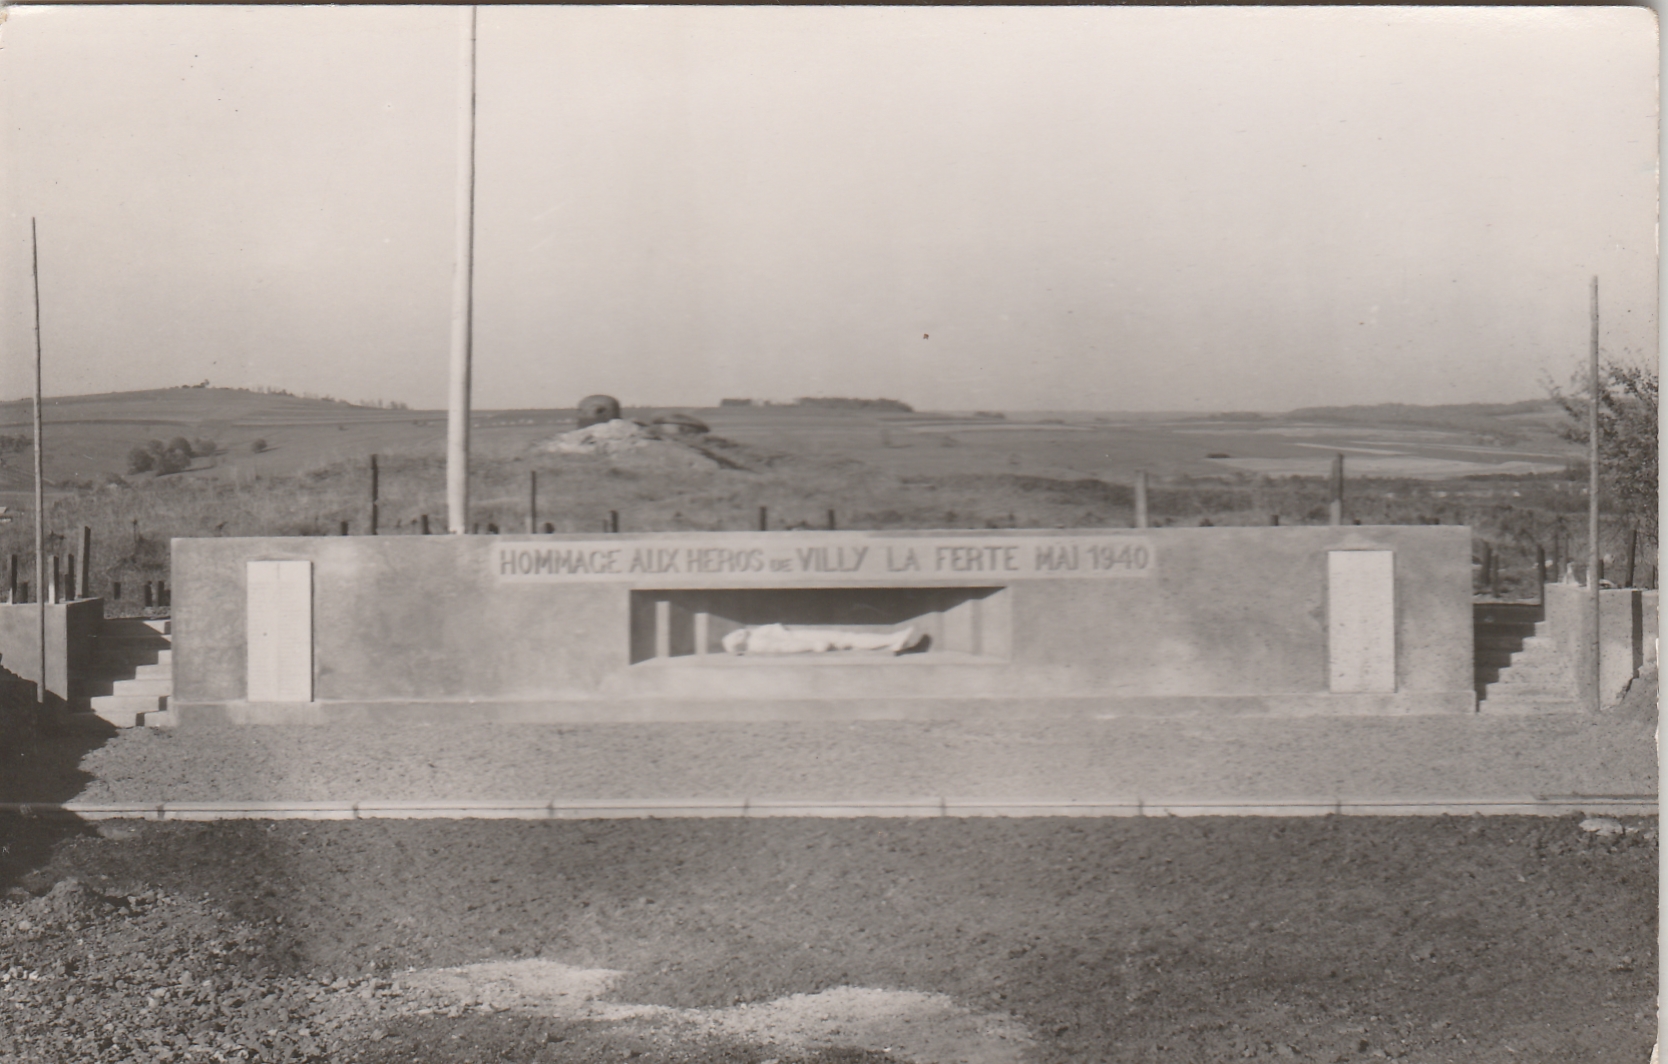 Ligne Maginot - LA FERTE - (Ouvrage d'infanterie) - Monument. Carte postale années 50. 